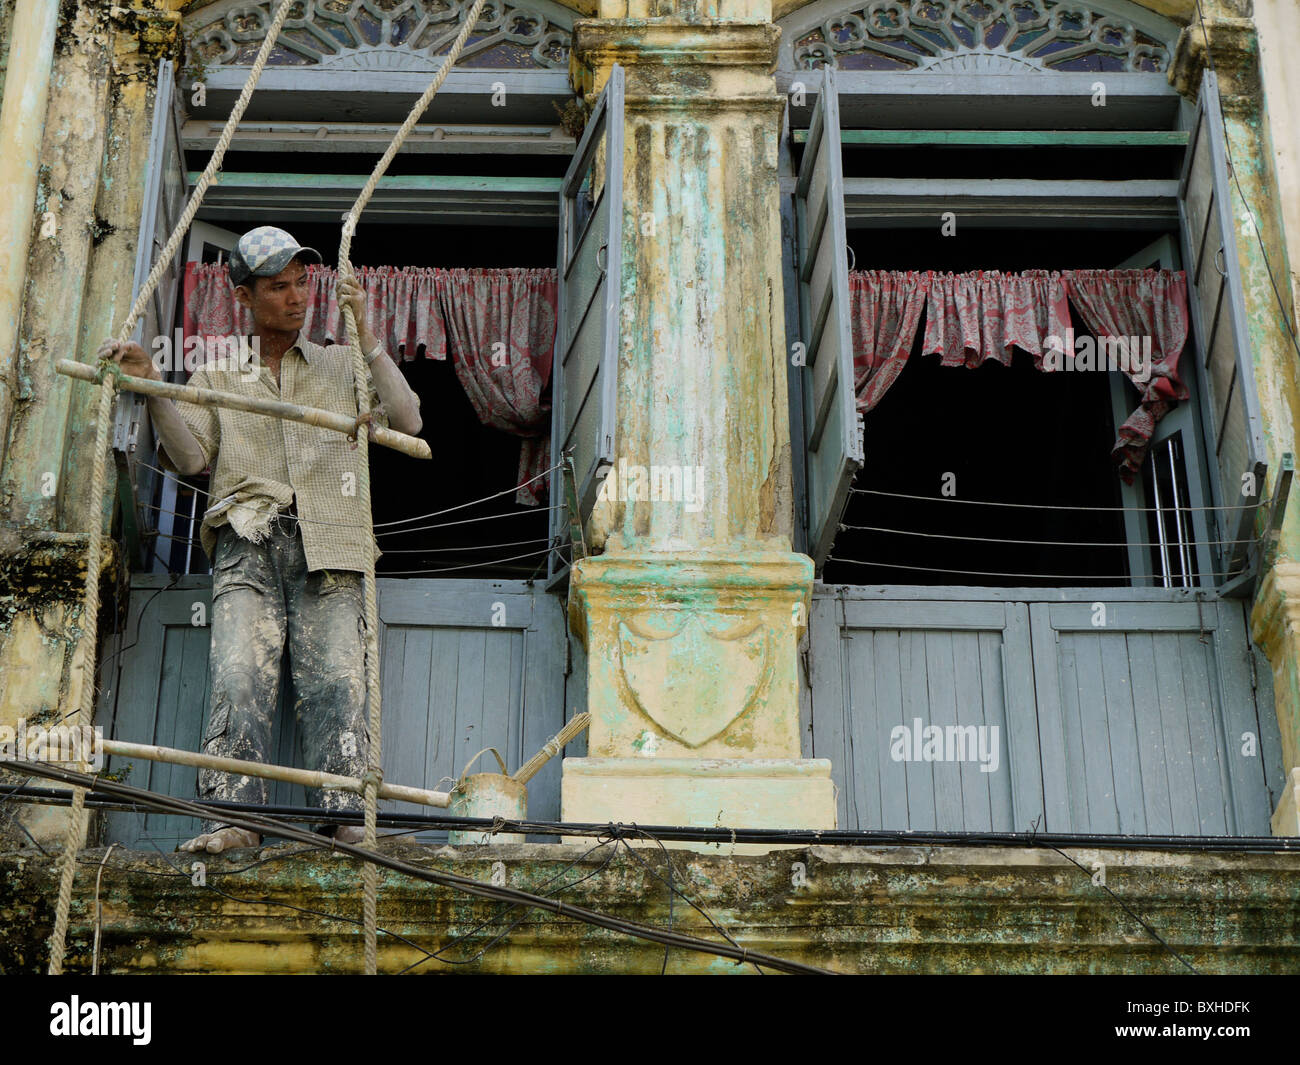 Man painting un bâtiment colonial, Yangon, Birmanie, Myanmar Banque D'Images